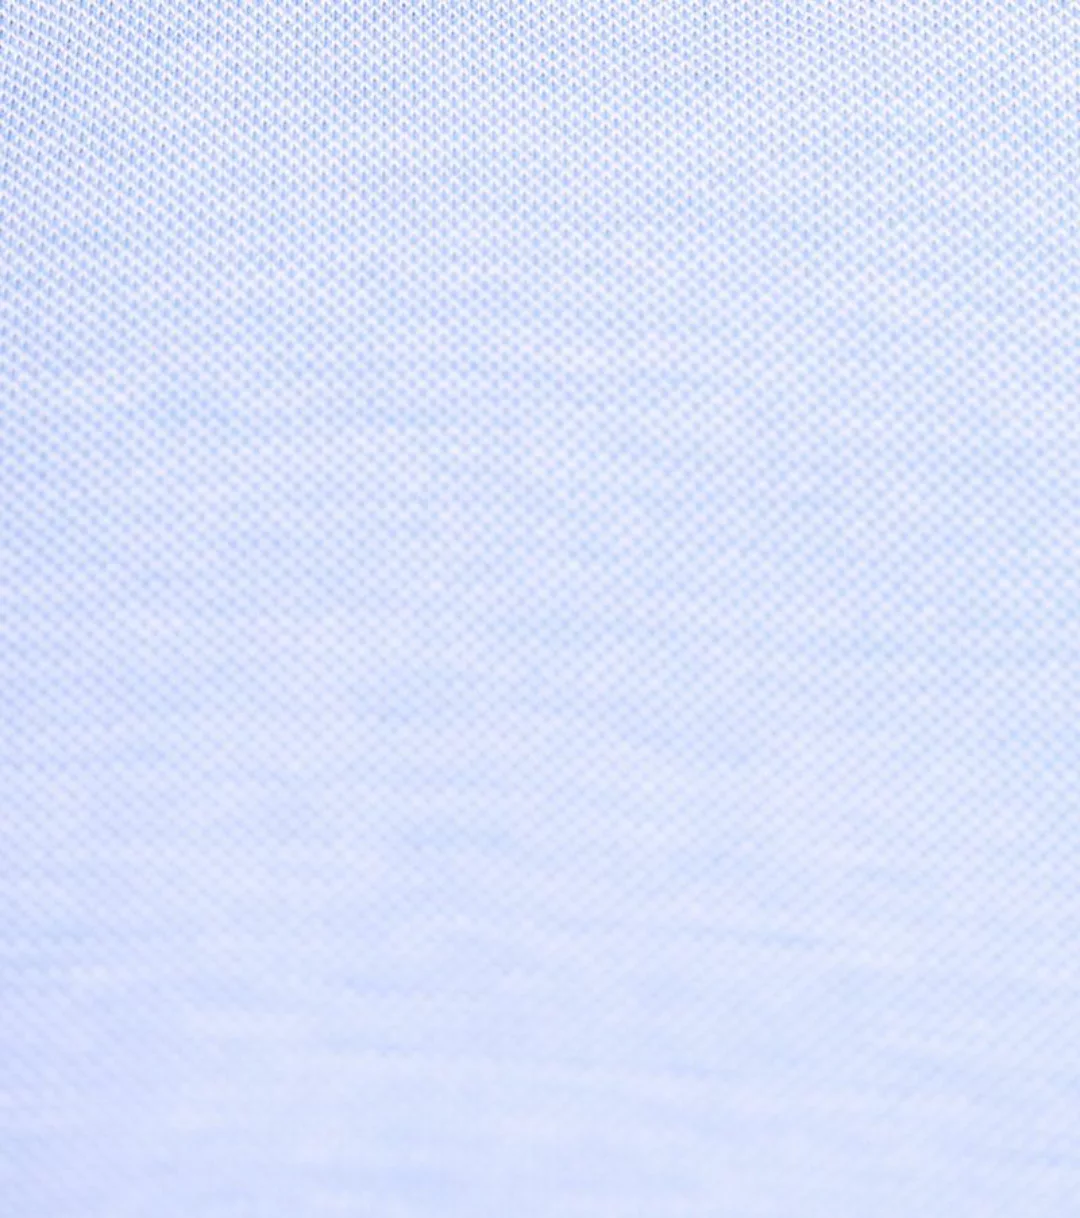 Suitable Hemd Knitted Piqué Hellblau - Größe 43 günstig online kaufen